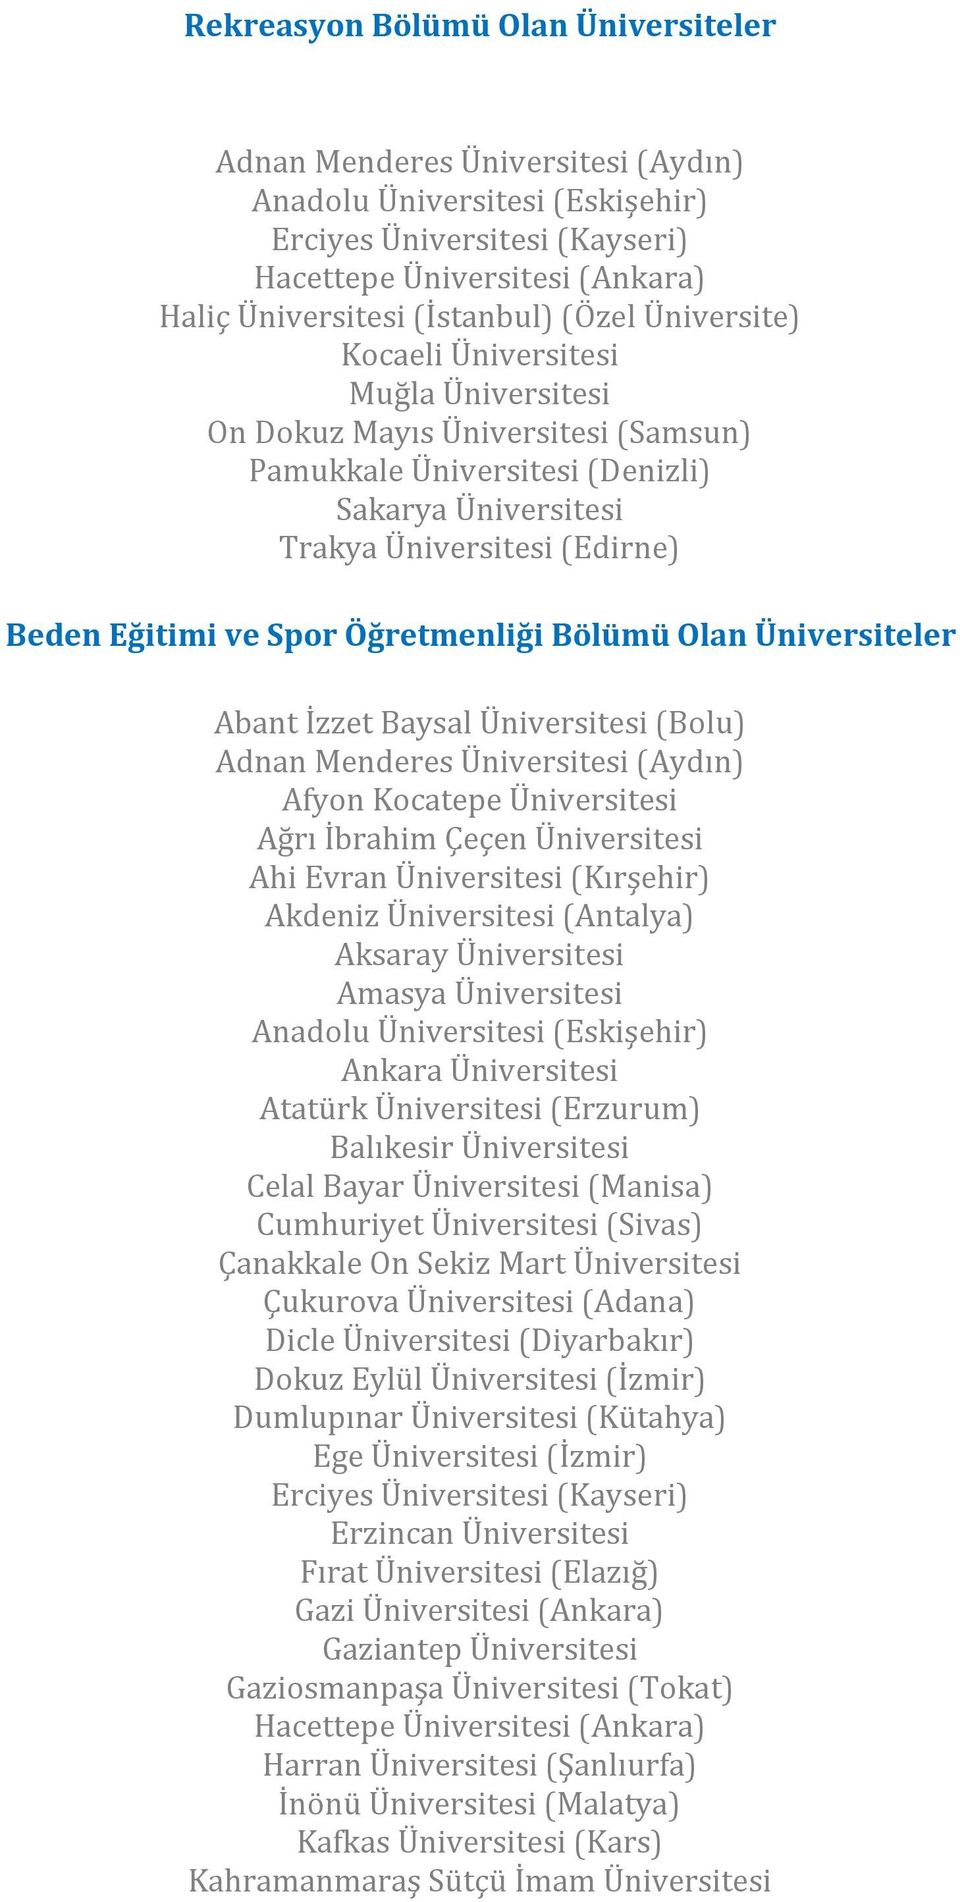 (Kırşehir) Akdeniz Üniversitesi (Antalya) Aksaray Üniversitesi Amasya Üniversitesi Ankara Üniversitesi Atatürk Üniversitesi (Erzurum) Balıkesir Üniversitesi Celal Bayar Üniversitesi (Manisa)